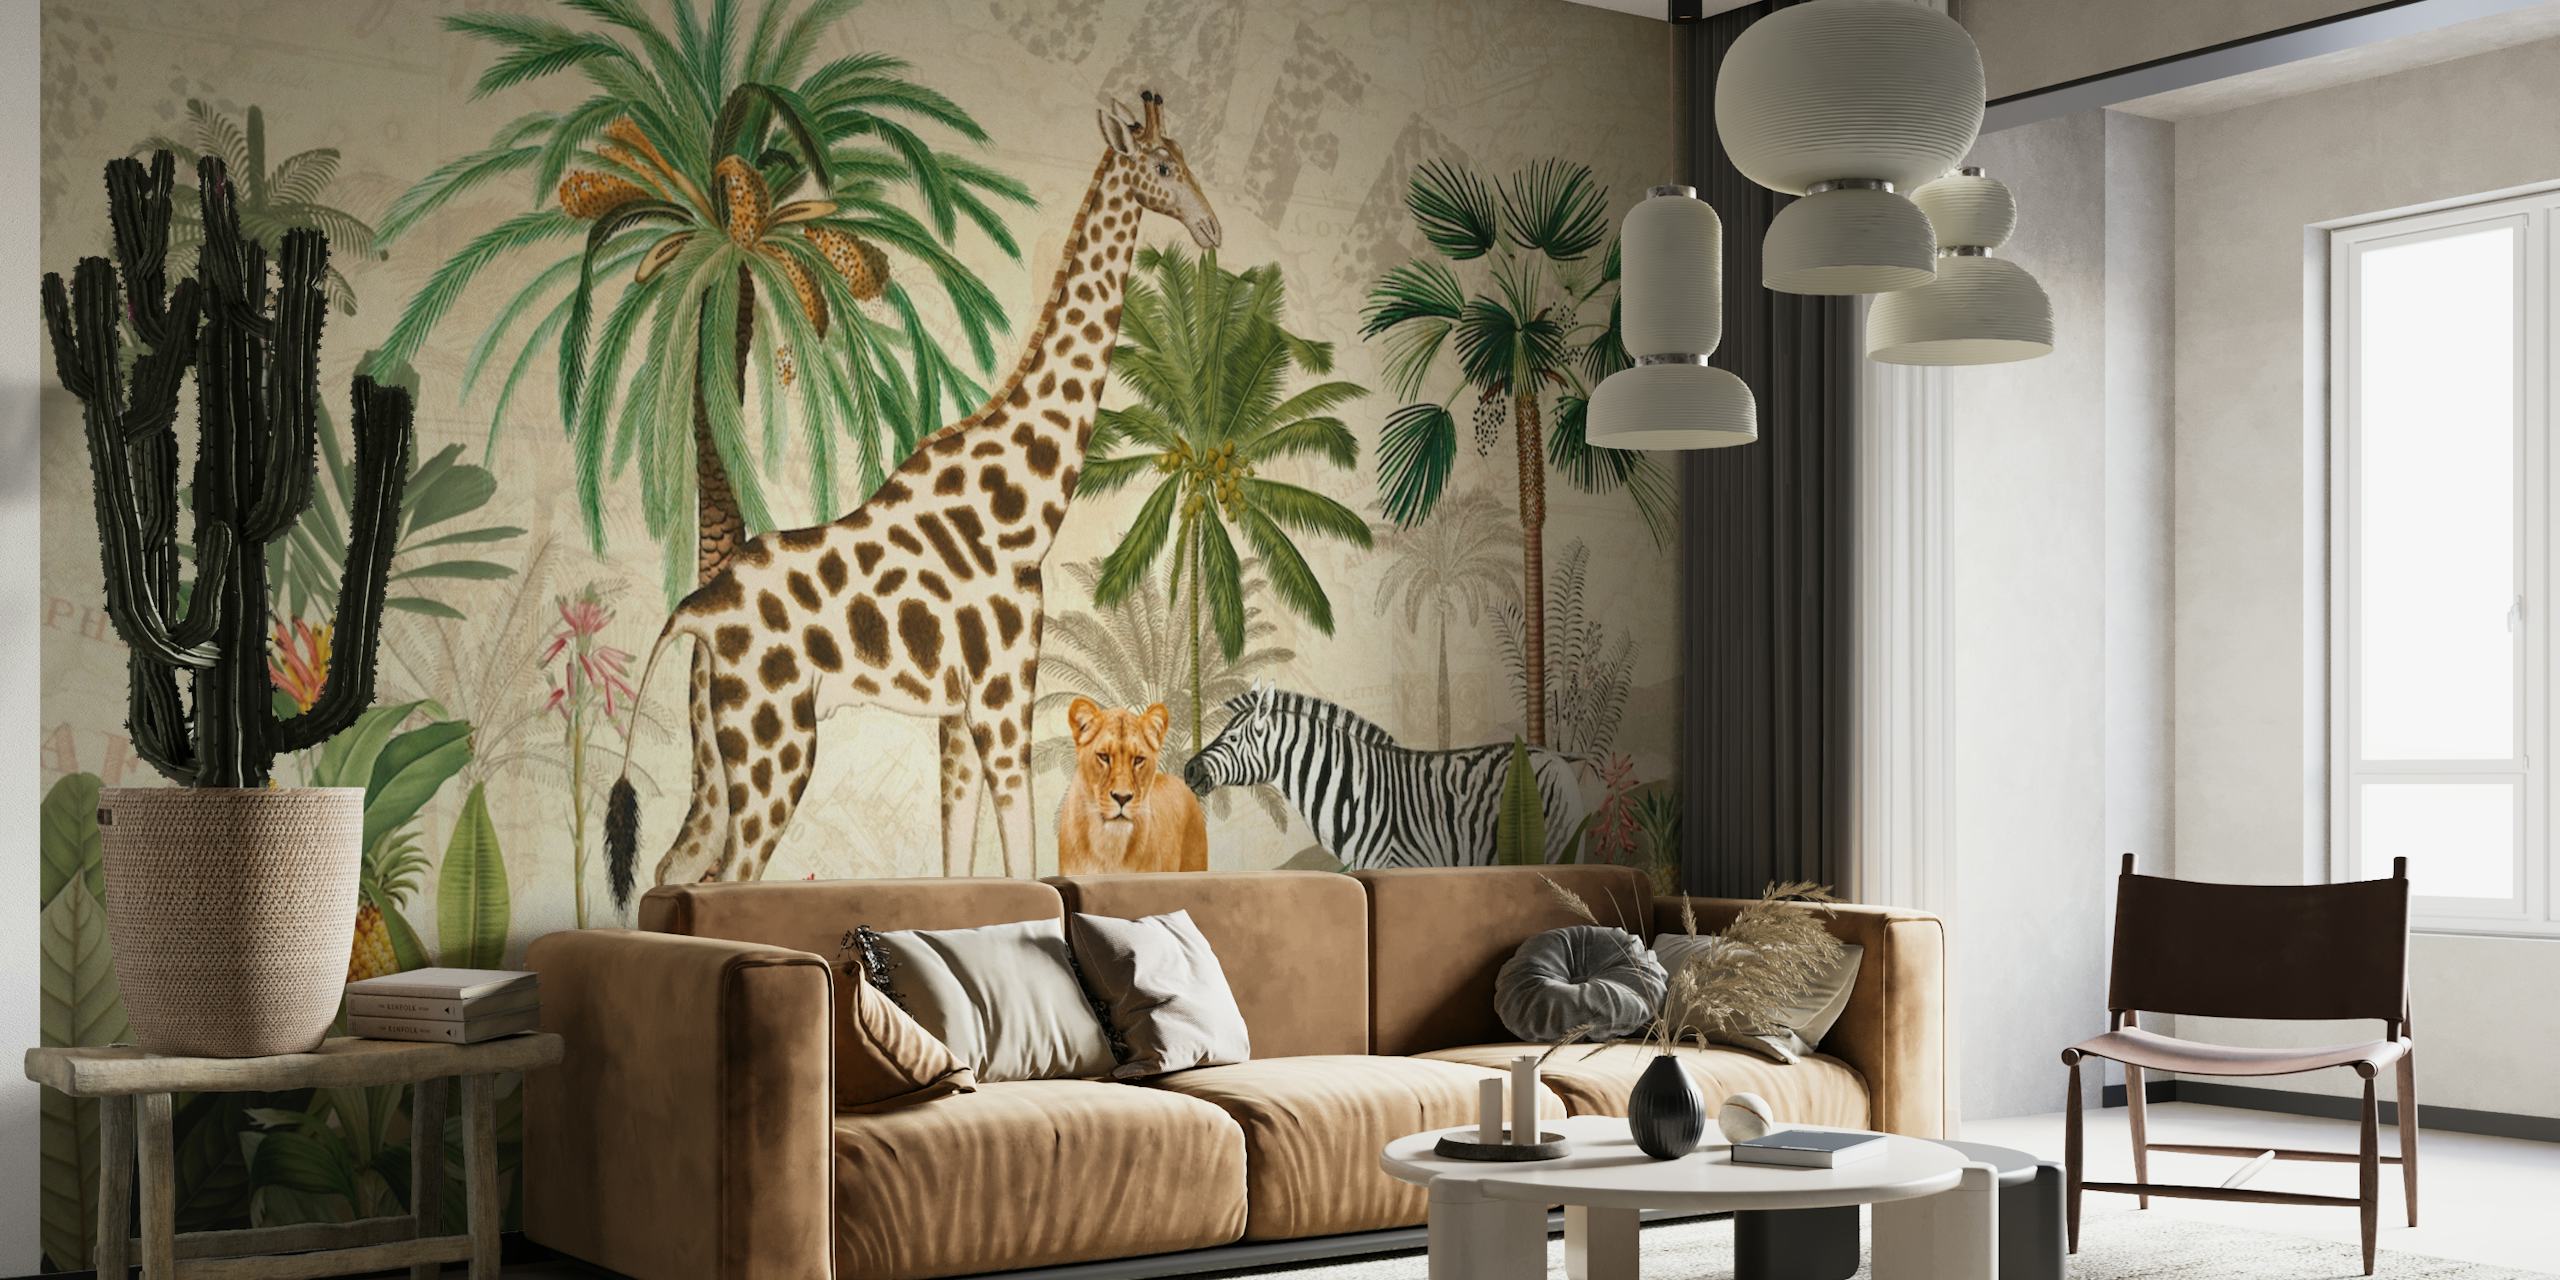 Fotomural vinílico de parede de safari na selva em estilo vintage com girafas, leopardos e zebras em um cenário exuberante